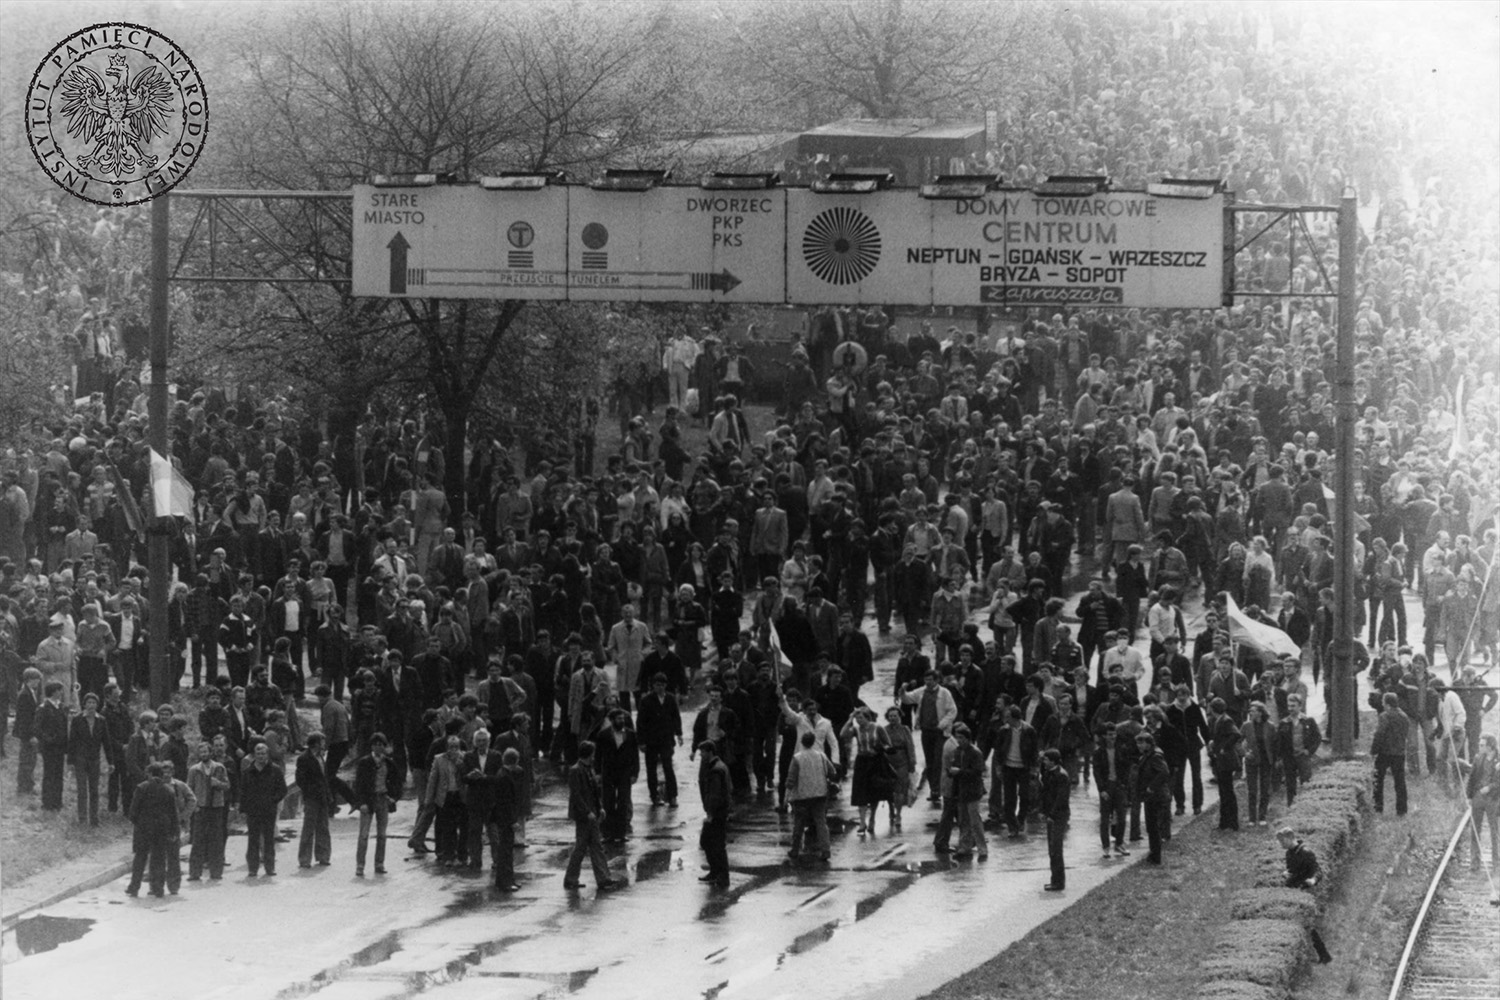 01.05.1983. Gdańsk. Demonstracja w centrum Gdańska / źródło: Instytut Pamięci Narodowej